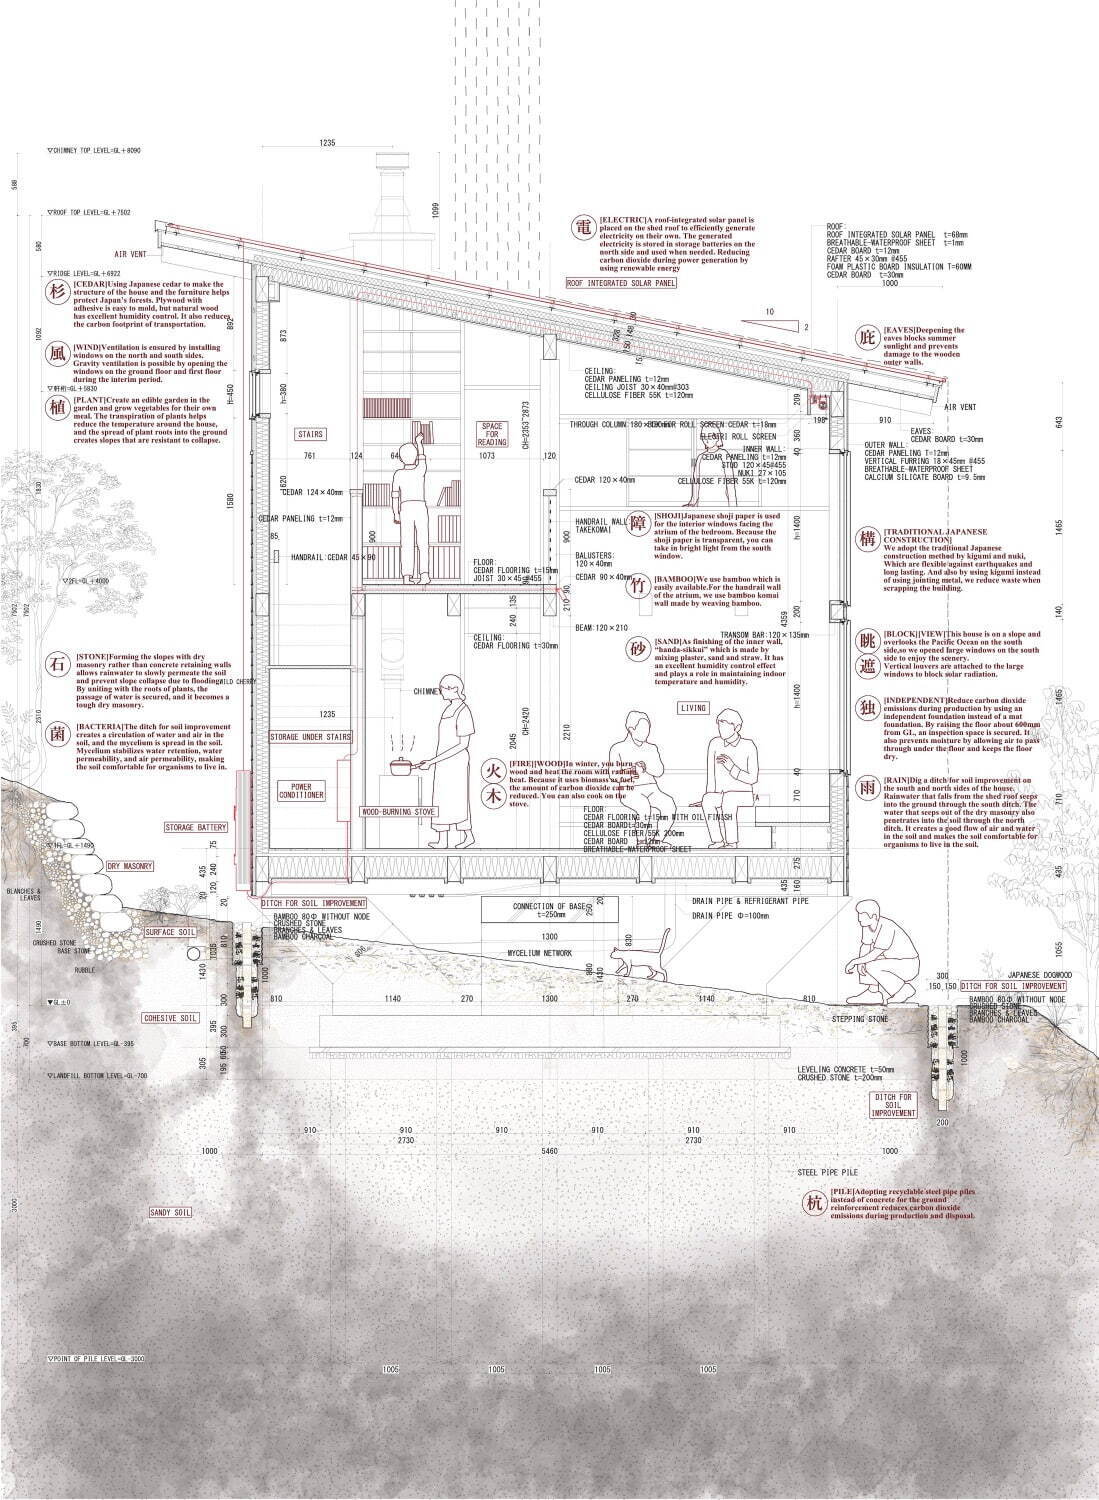 能作文徳＋常山未央 《秋谷スマートハウス》断面図
©Fuminori Nousaku Architects + Studio mnm